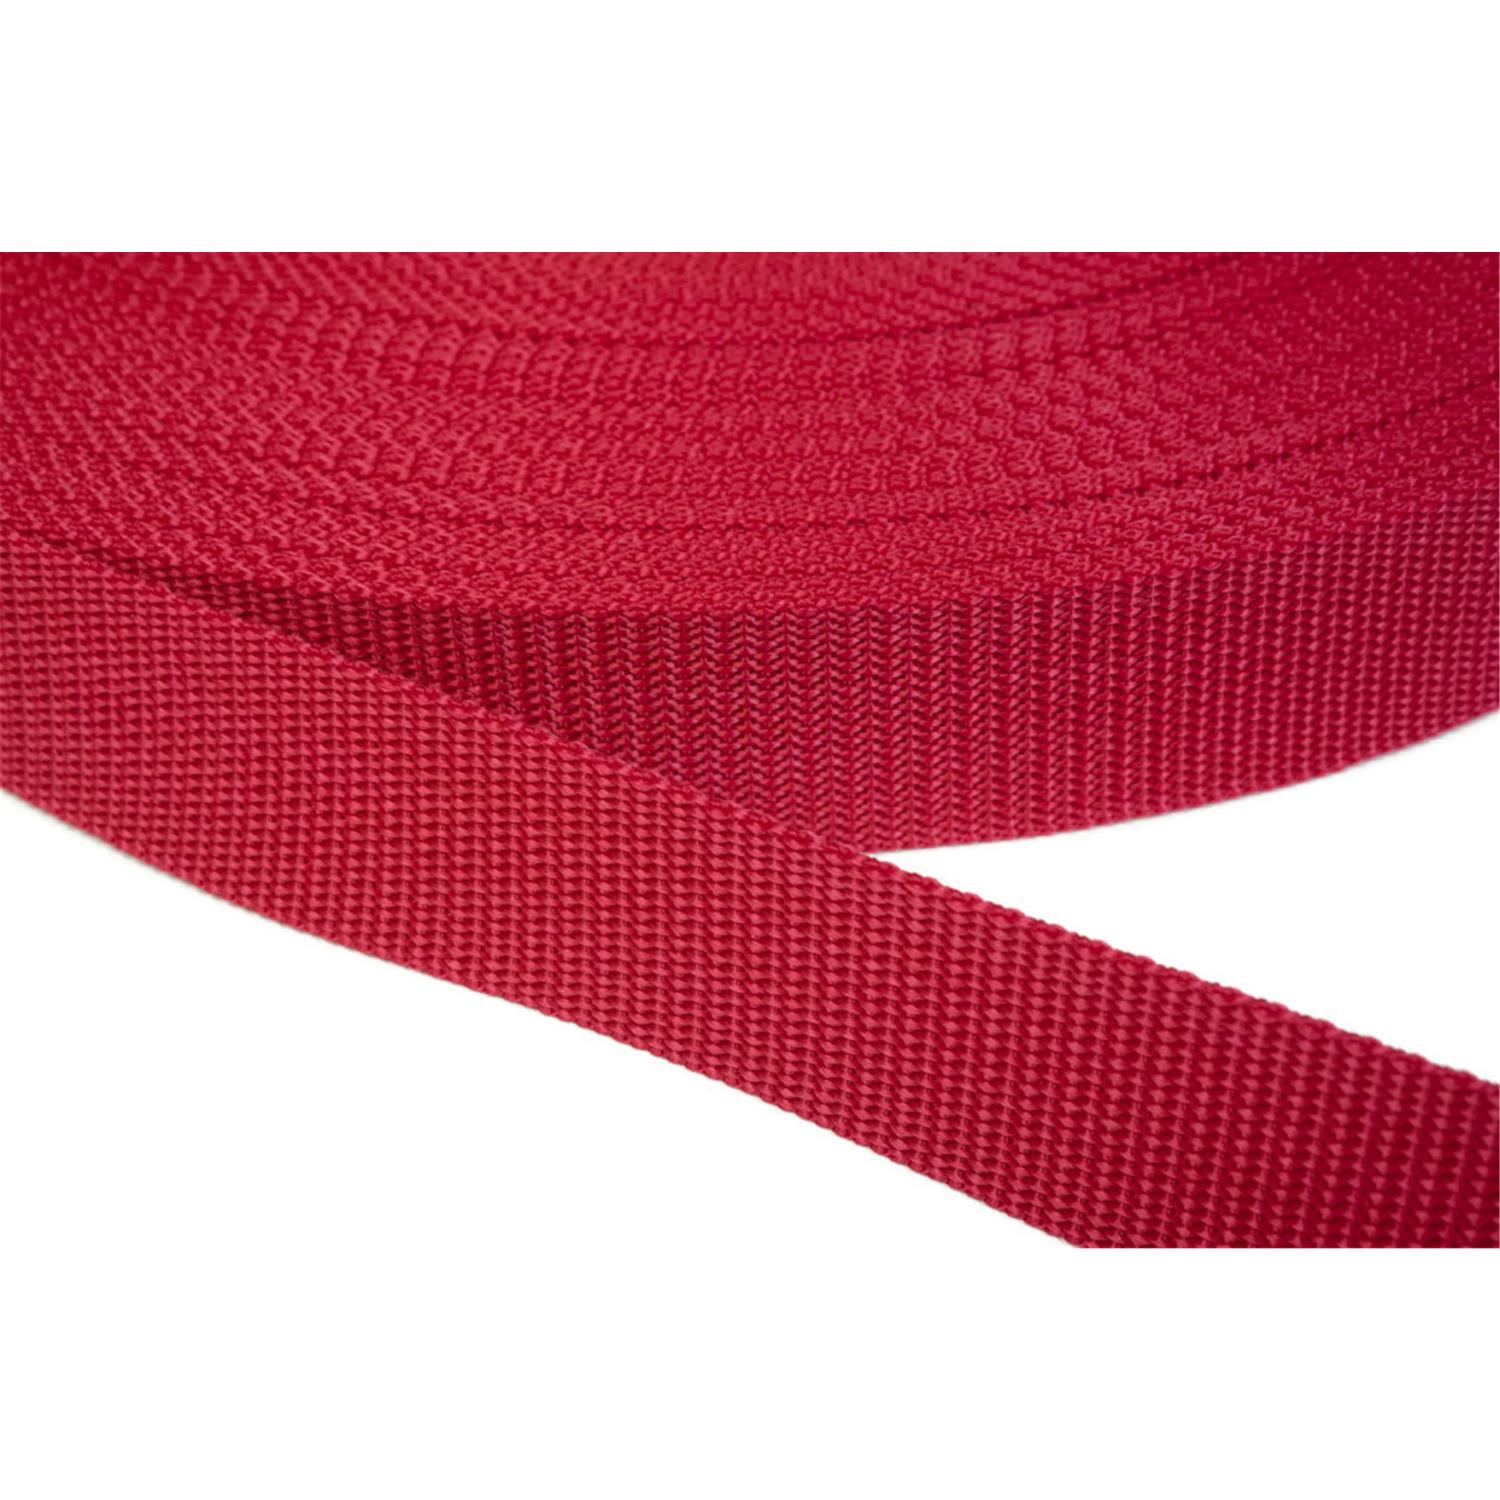 Gurtband 50mm breit aus Polypropylen in 41 Farben 19 - rot 12 Meter